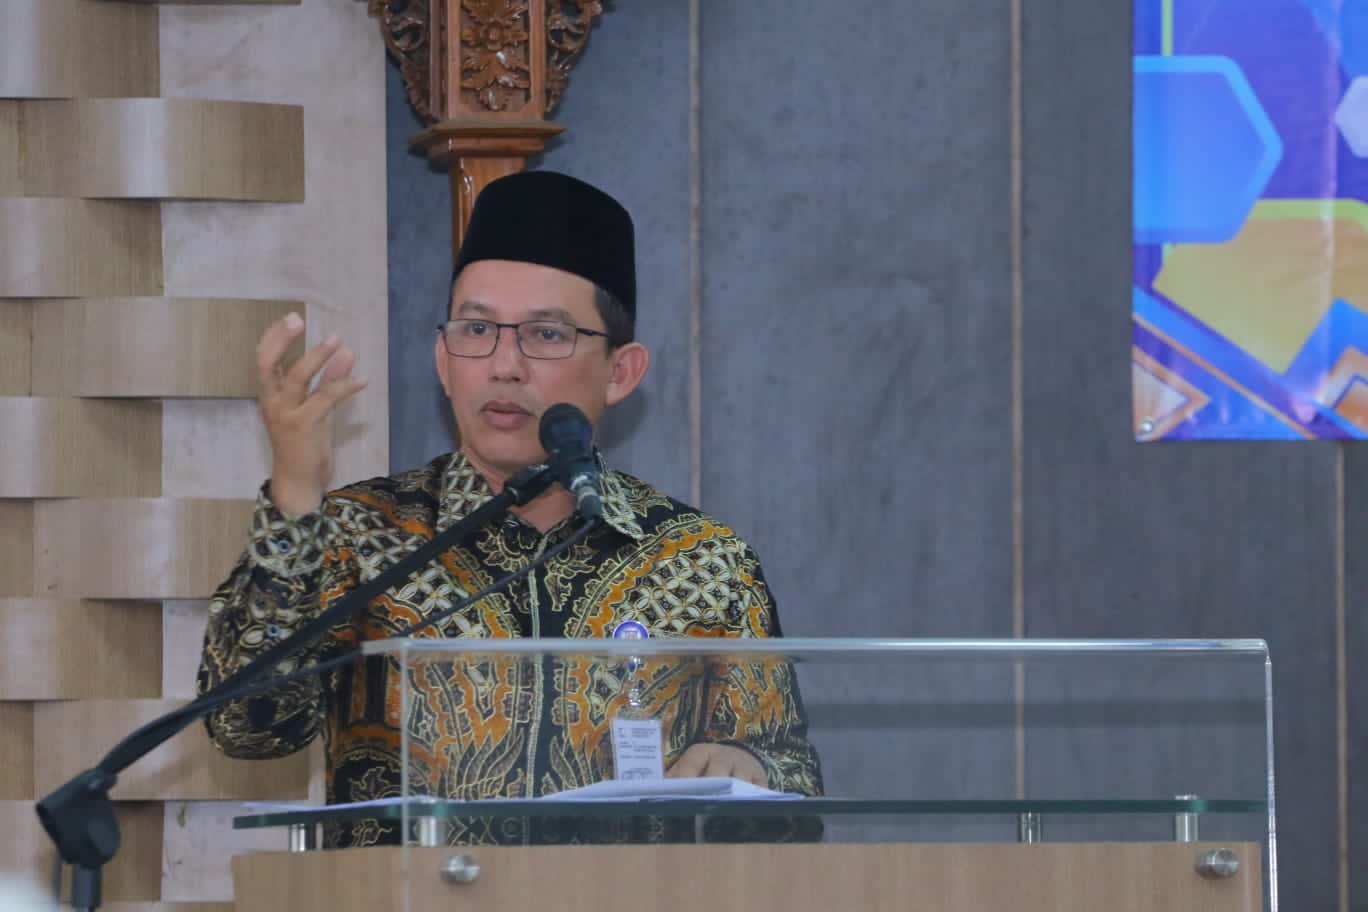 Warung Aceh Bikin Resah, Pj Bupati Tegal Siap Bertindak Tegas